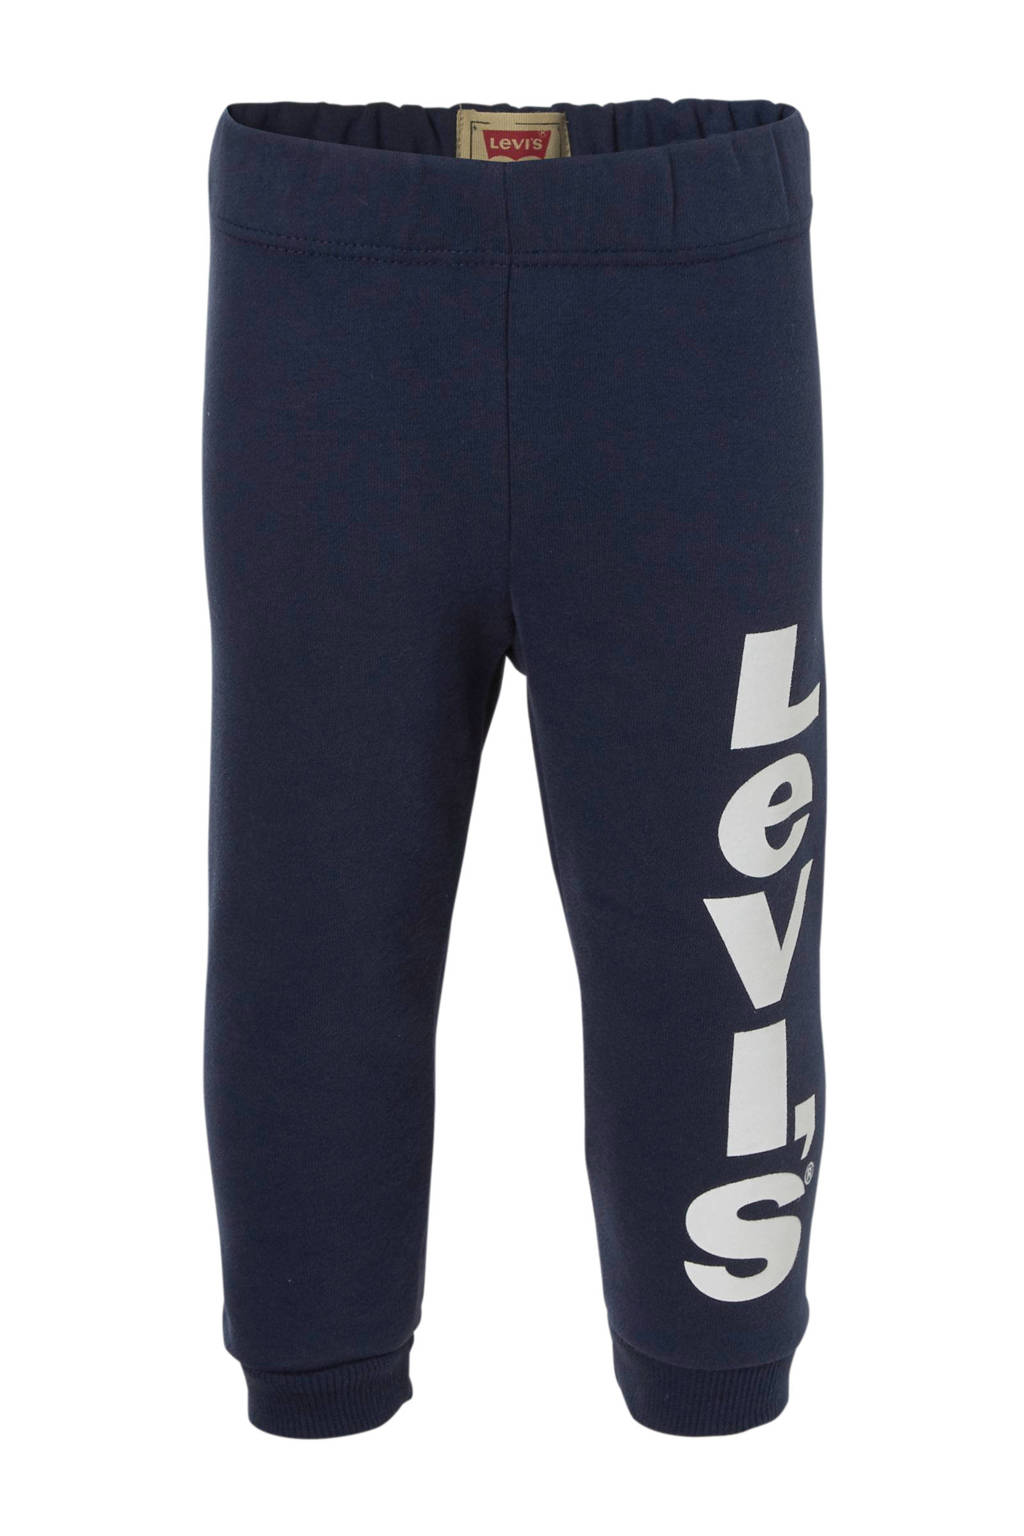 ruimte min Registratie Levi's Kids joggingbroek met logo donkerblauw | wehkamp